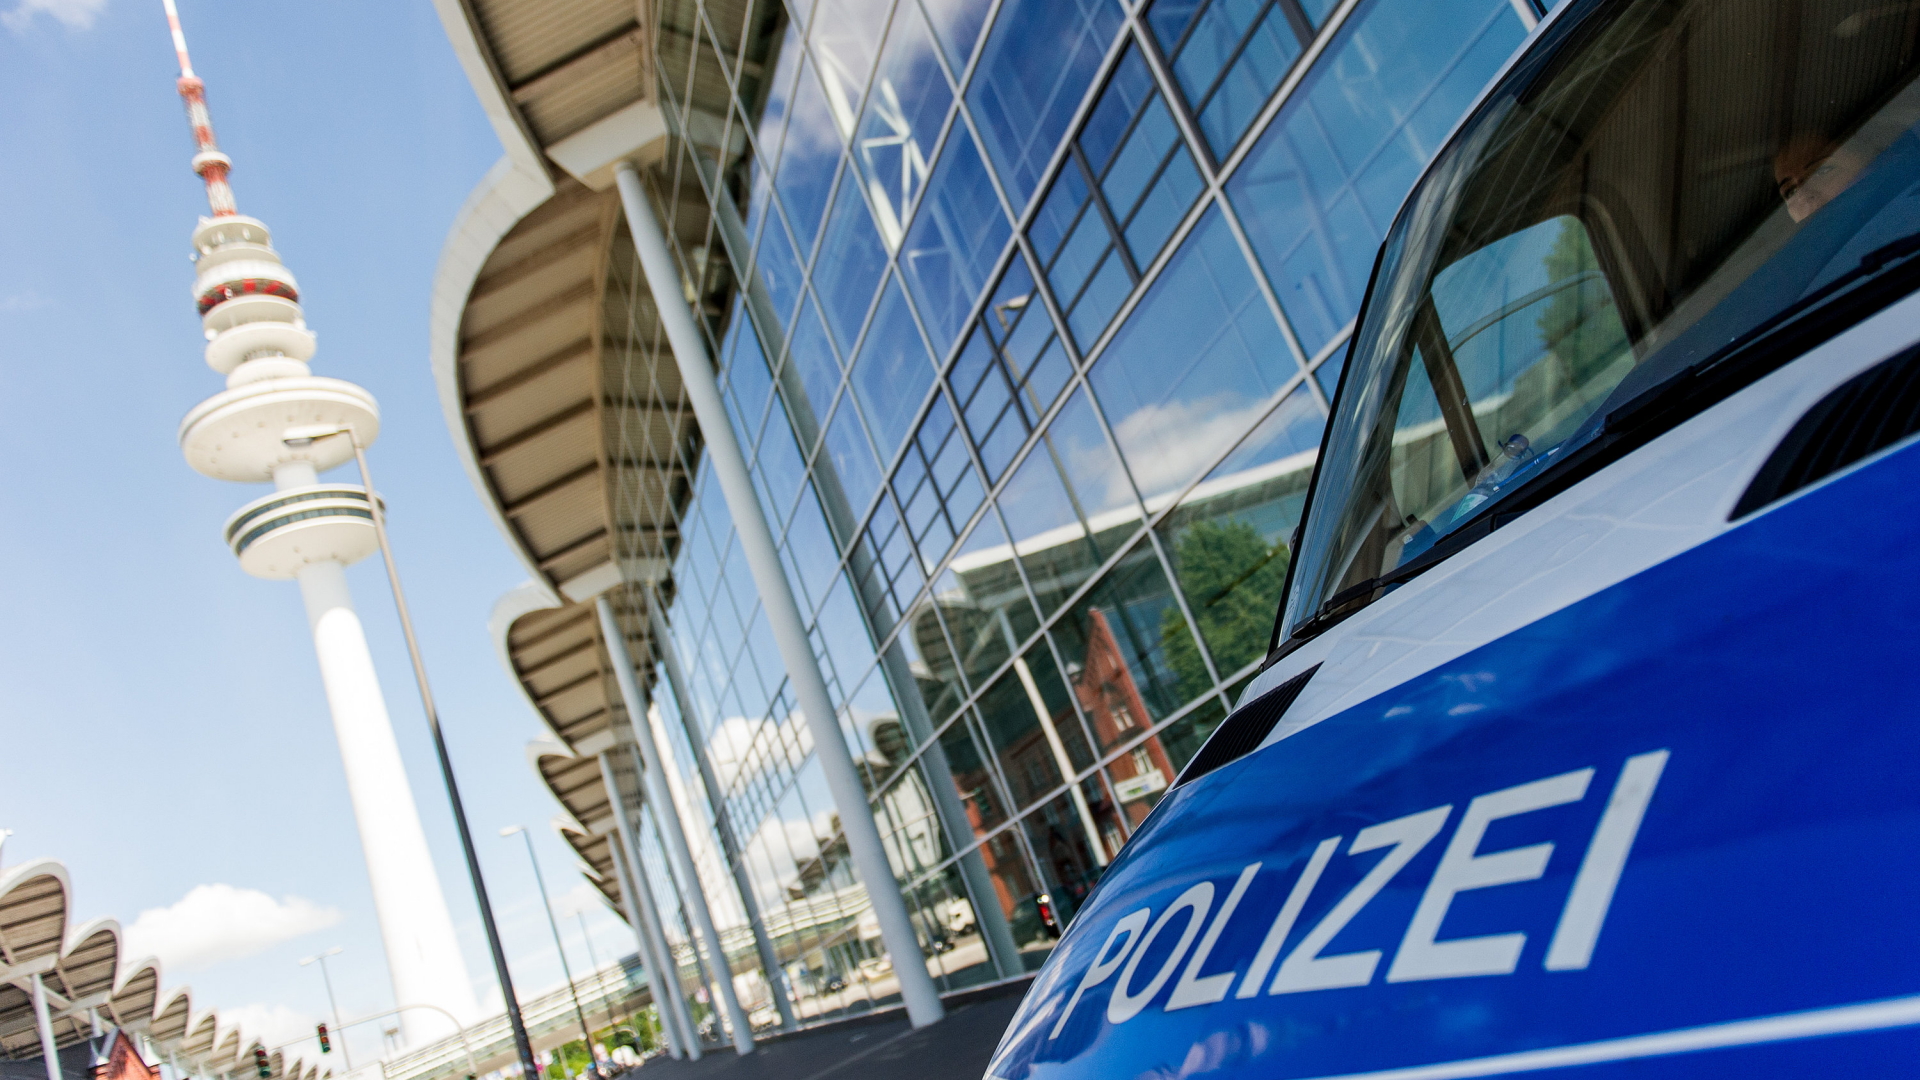 Polizeiwagen in Hamburg | Bildquelle: dpa